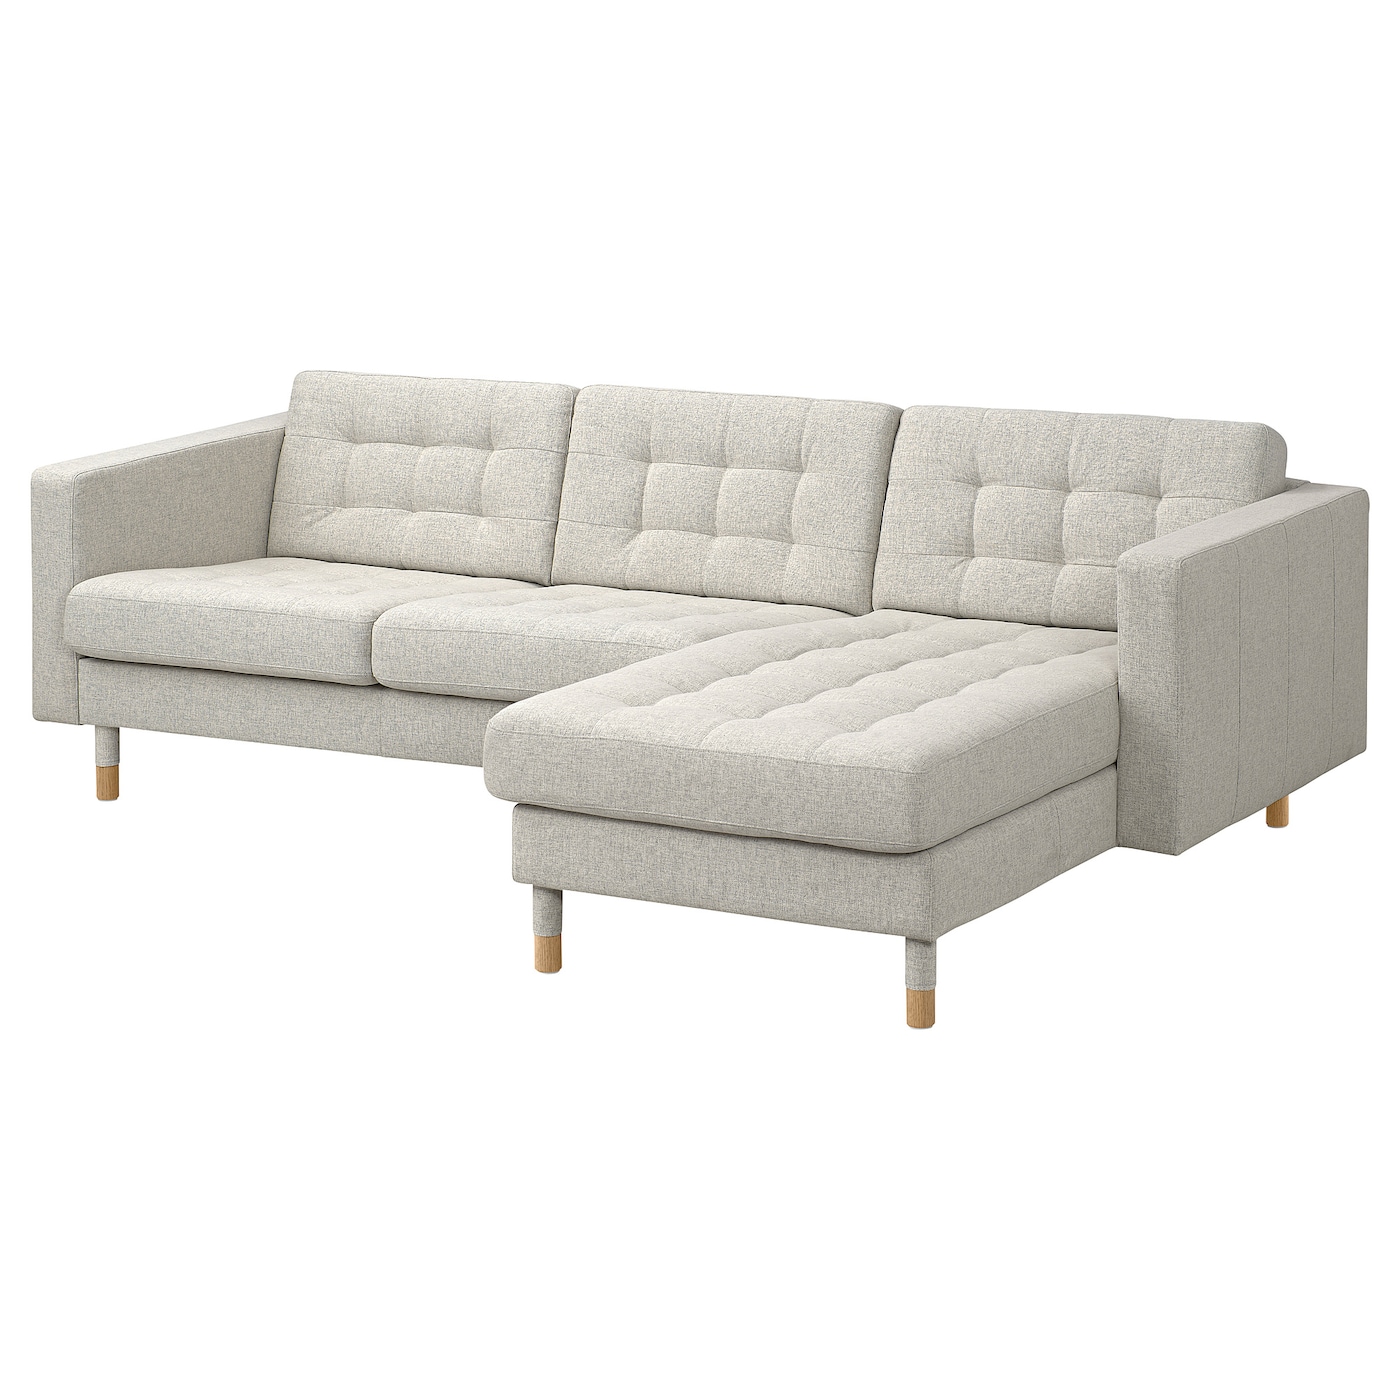 3-местный диван с шезлонгом - IKEA LANDSKRONA, 89x240см, бежевый, ЛАНДСКРУНА ИКЕА